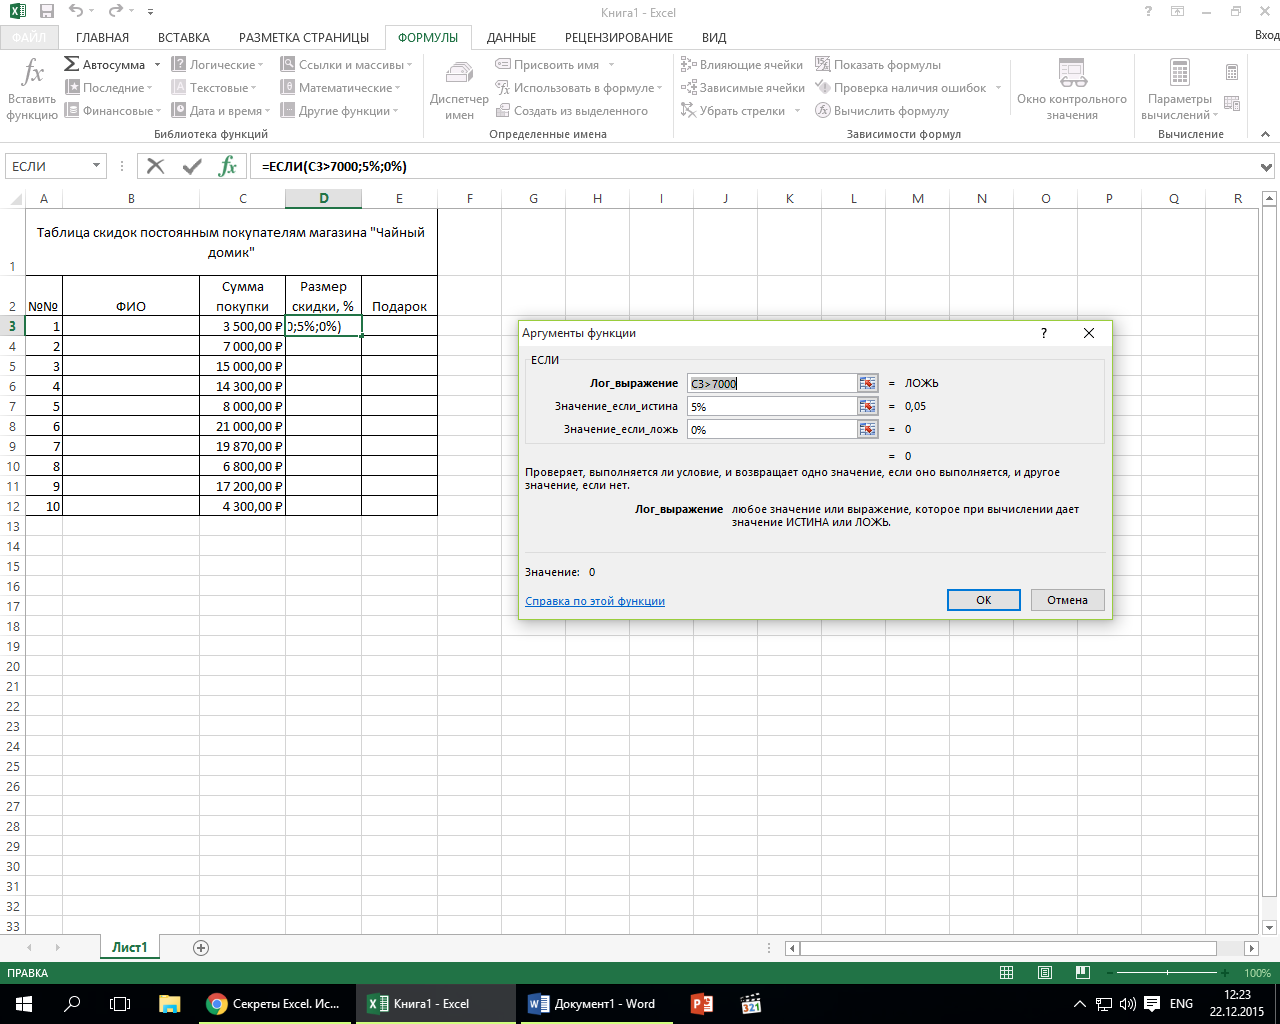 Лабораторная работа в Excel Знакомство с функцией ЕСЛИ()